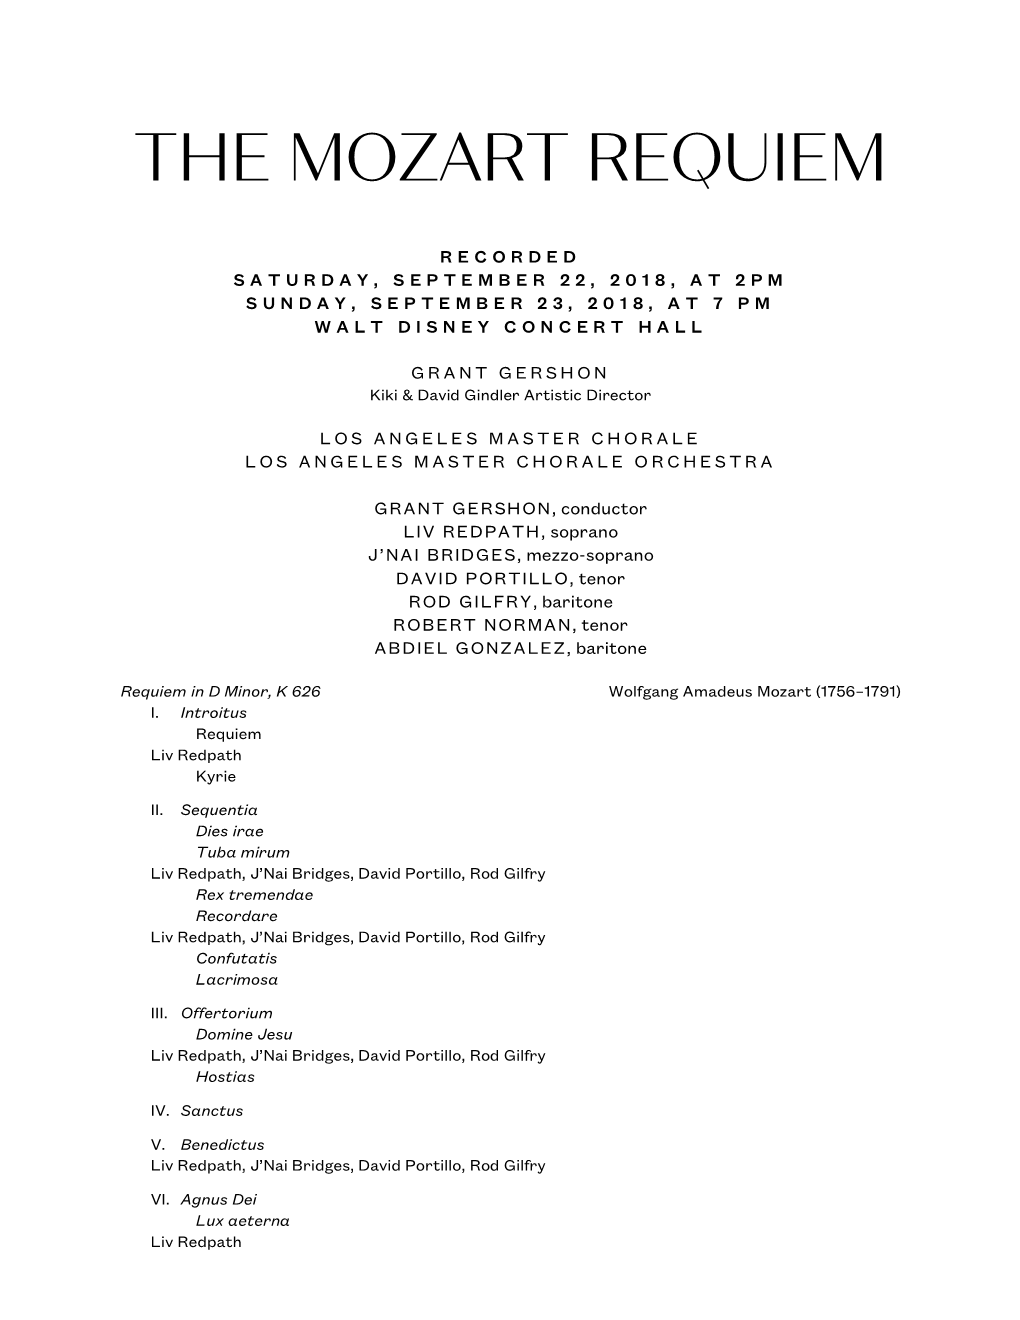 The Mozart REQUIEM